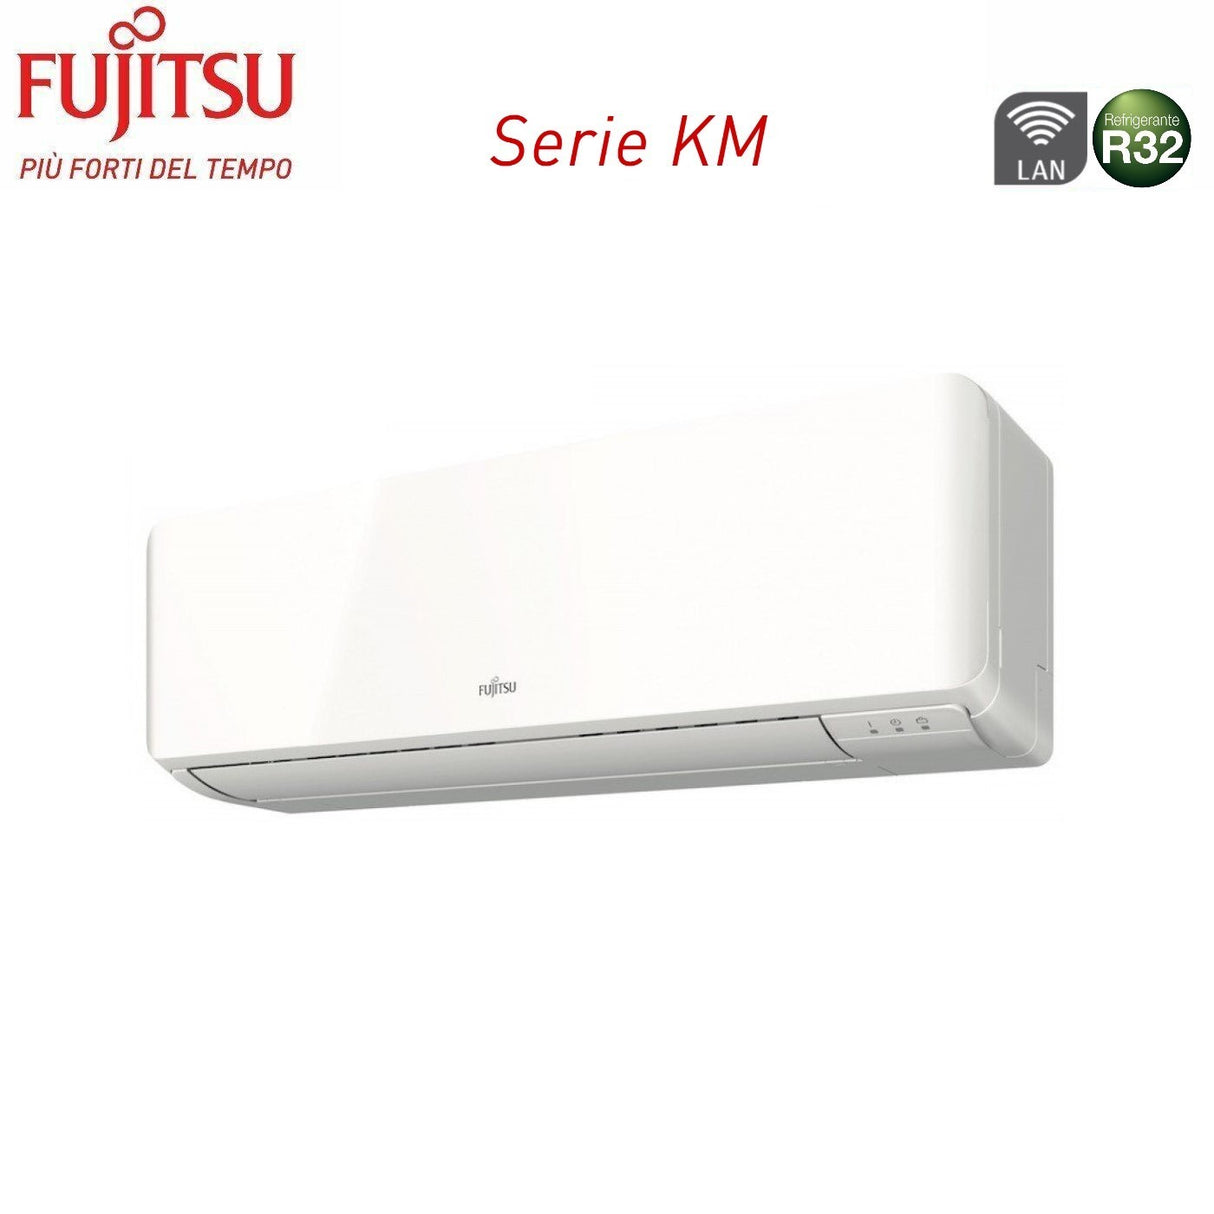 immagine-3-fujitsu-climatizzatore-condizionatore-fujitsu-dual-split-inverter-serie-km-1212-con-aoyg18kbta2-r-32-wi-fi-integrato-1200012000